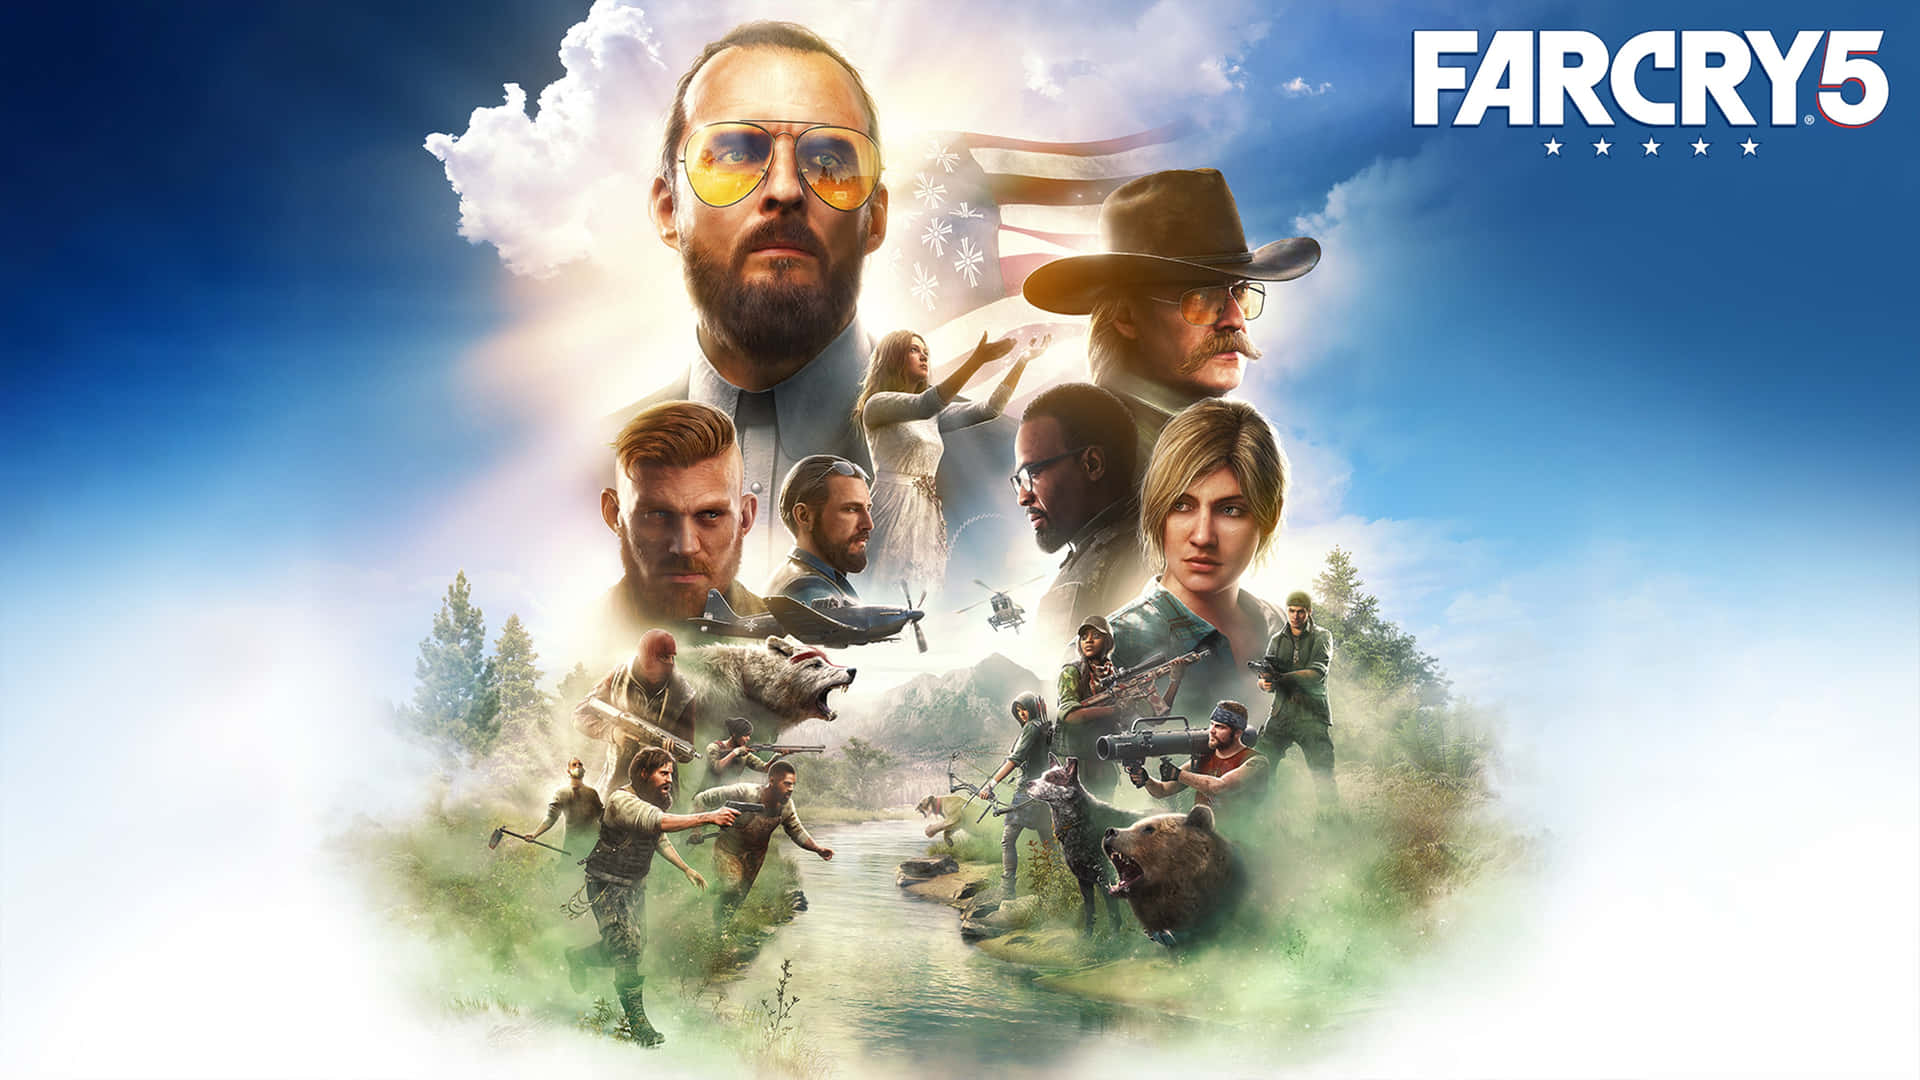 Bliförförd Av En Fantastisk Fotovärld Med Far Cry 5:s 4k Ultra Hd Som Bakgrundsbild På Din Dator Eller Mobiltelefon. Wallpaper